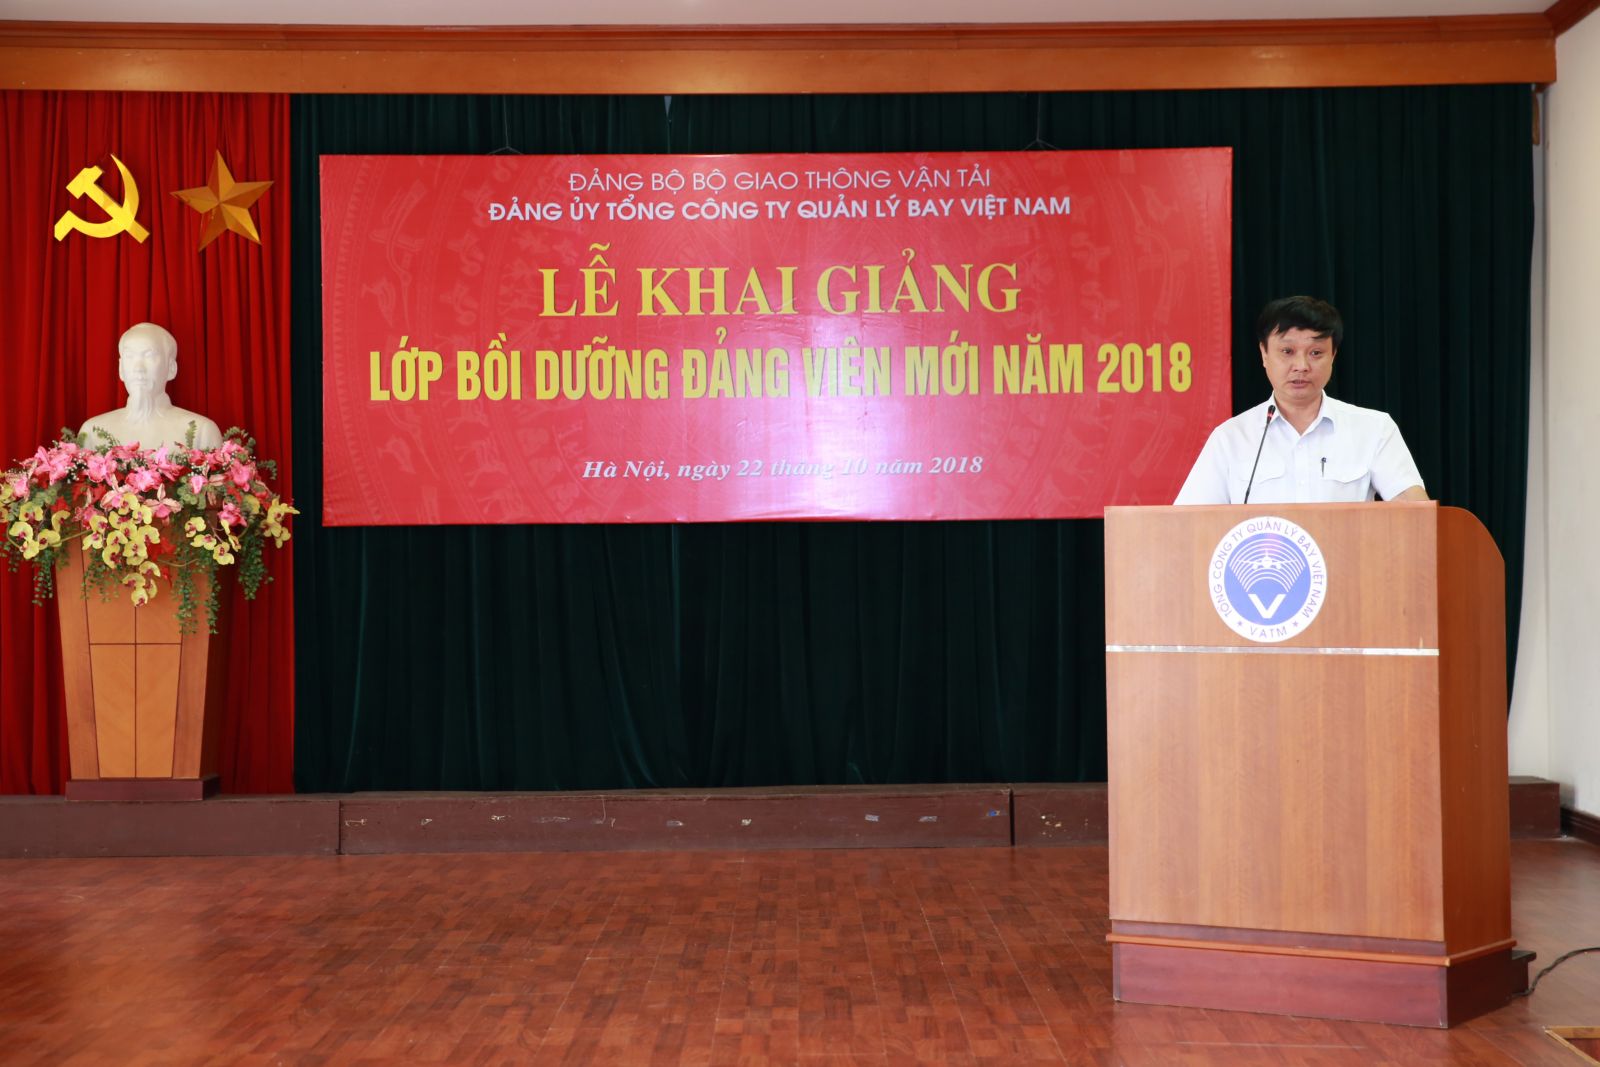 Công tác phát triển đảng viên năm 2018 của Đảng bộ Tổng công ty Quản lý bay Việt Nam